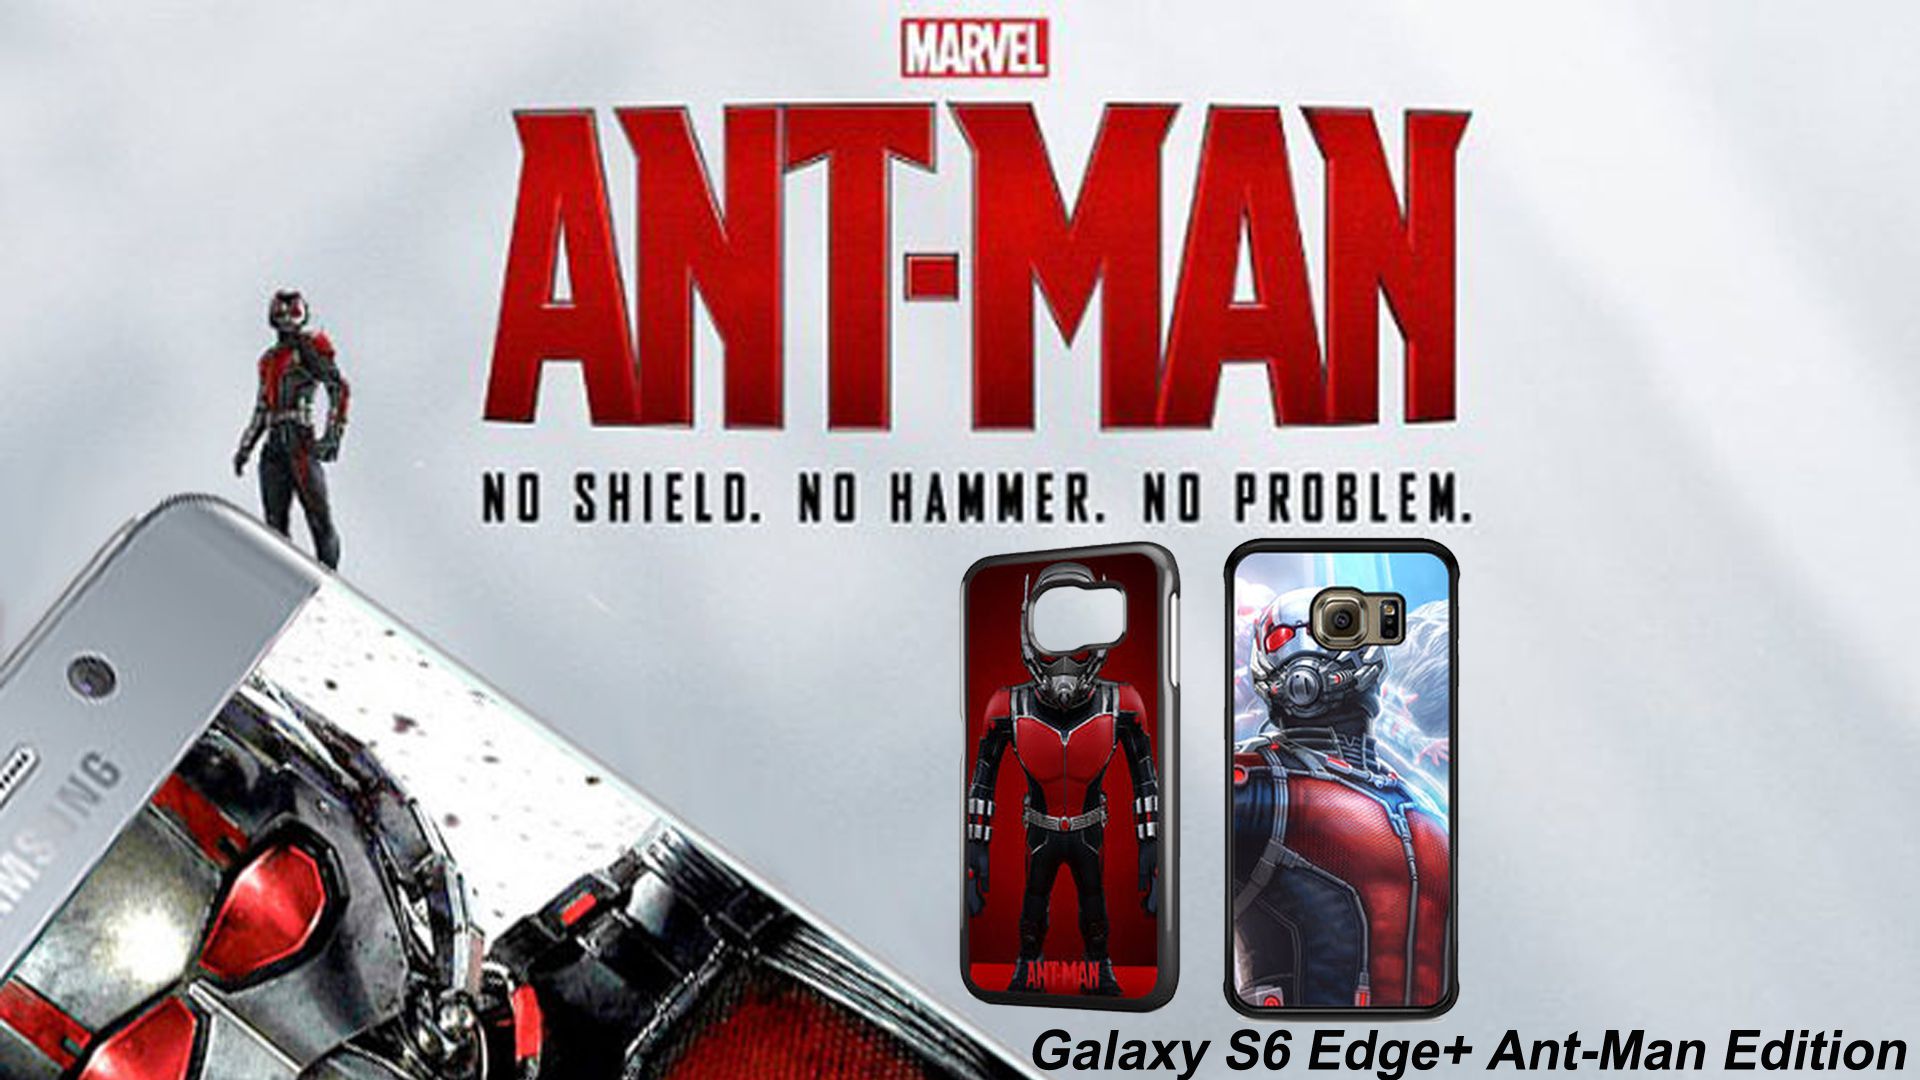 النسخة الجديدة من هاتف سامسونج جالكسي اس 6 ايدج بلس Galaxy S6 edge+ Ant-Man Limited Edition